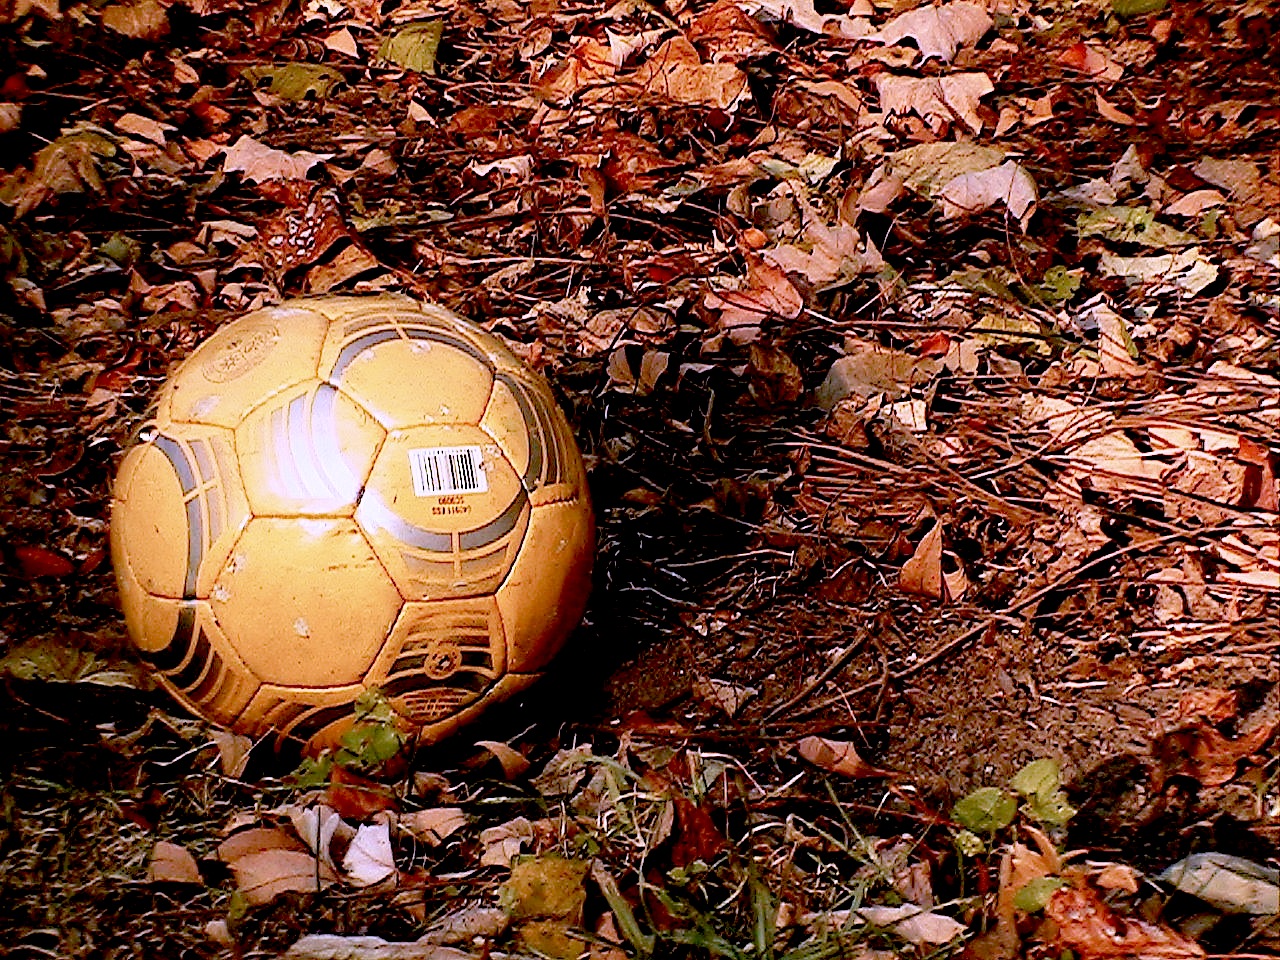 Soccer ball in the leaves.JPG